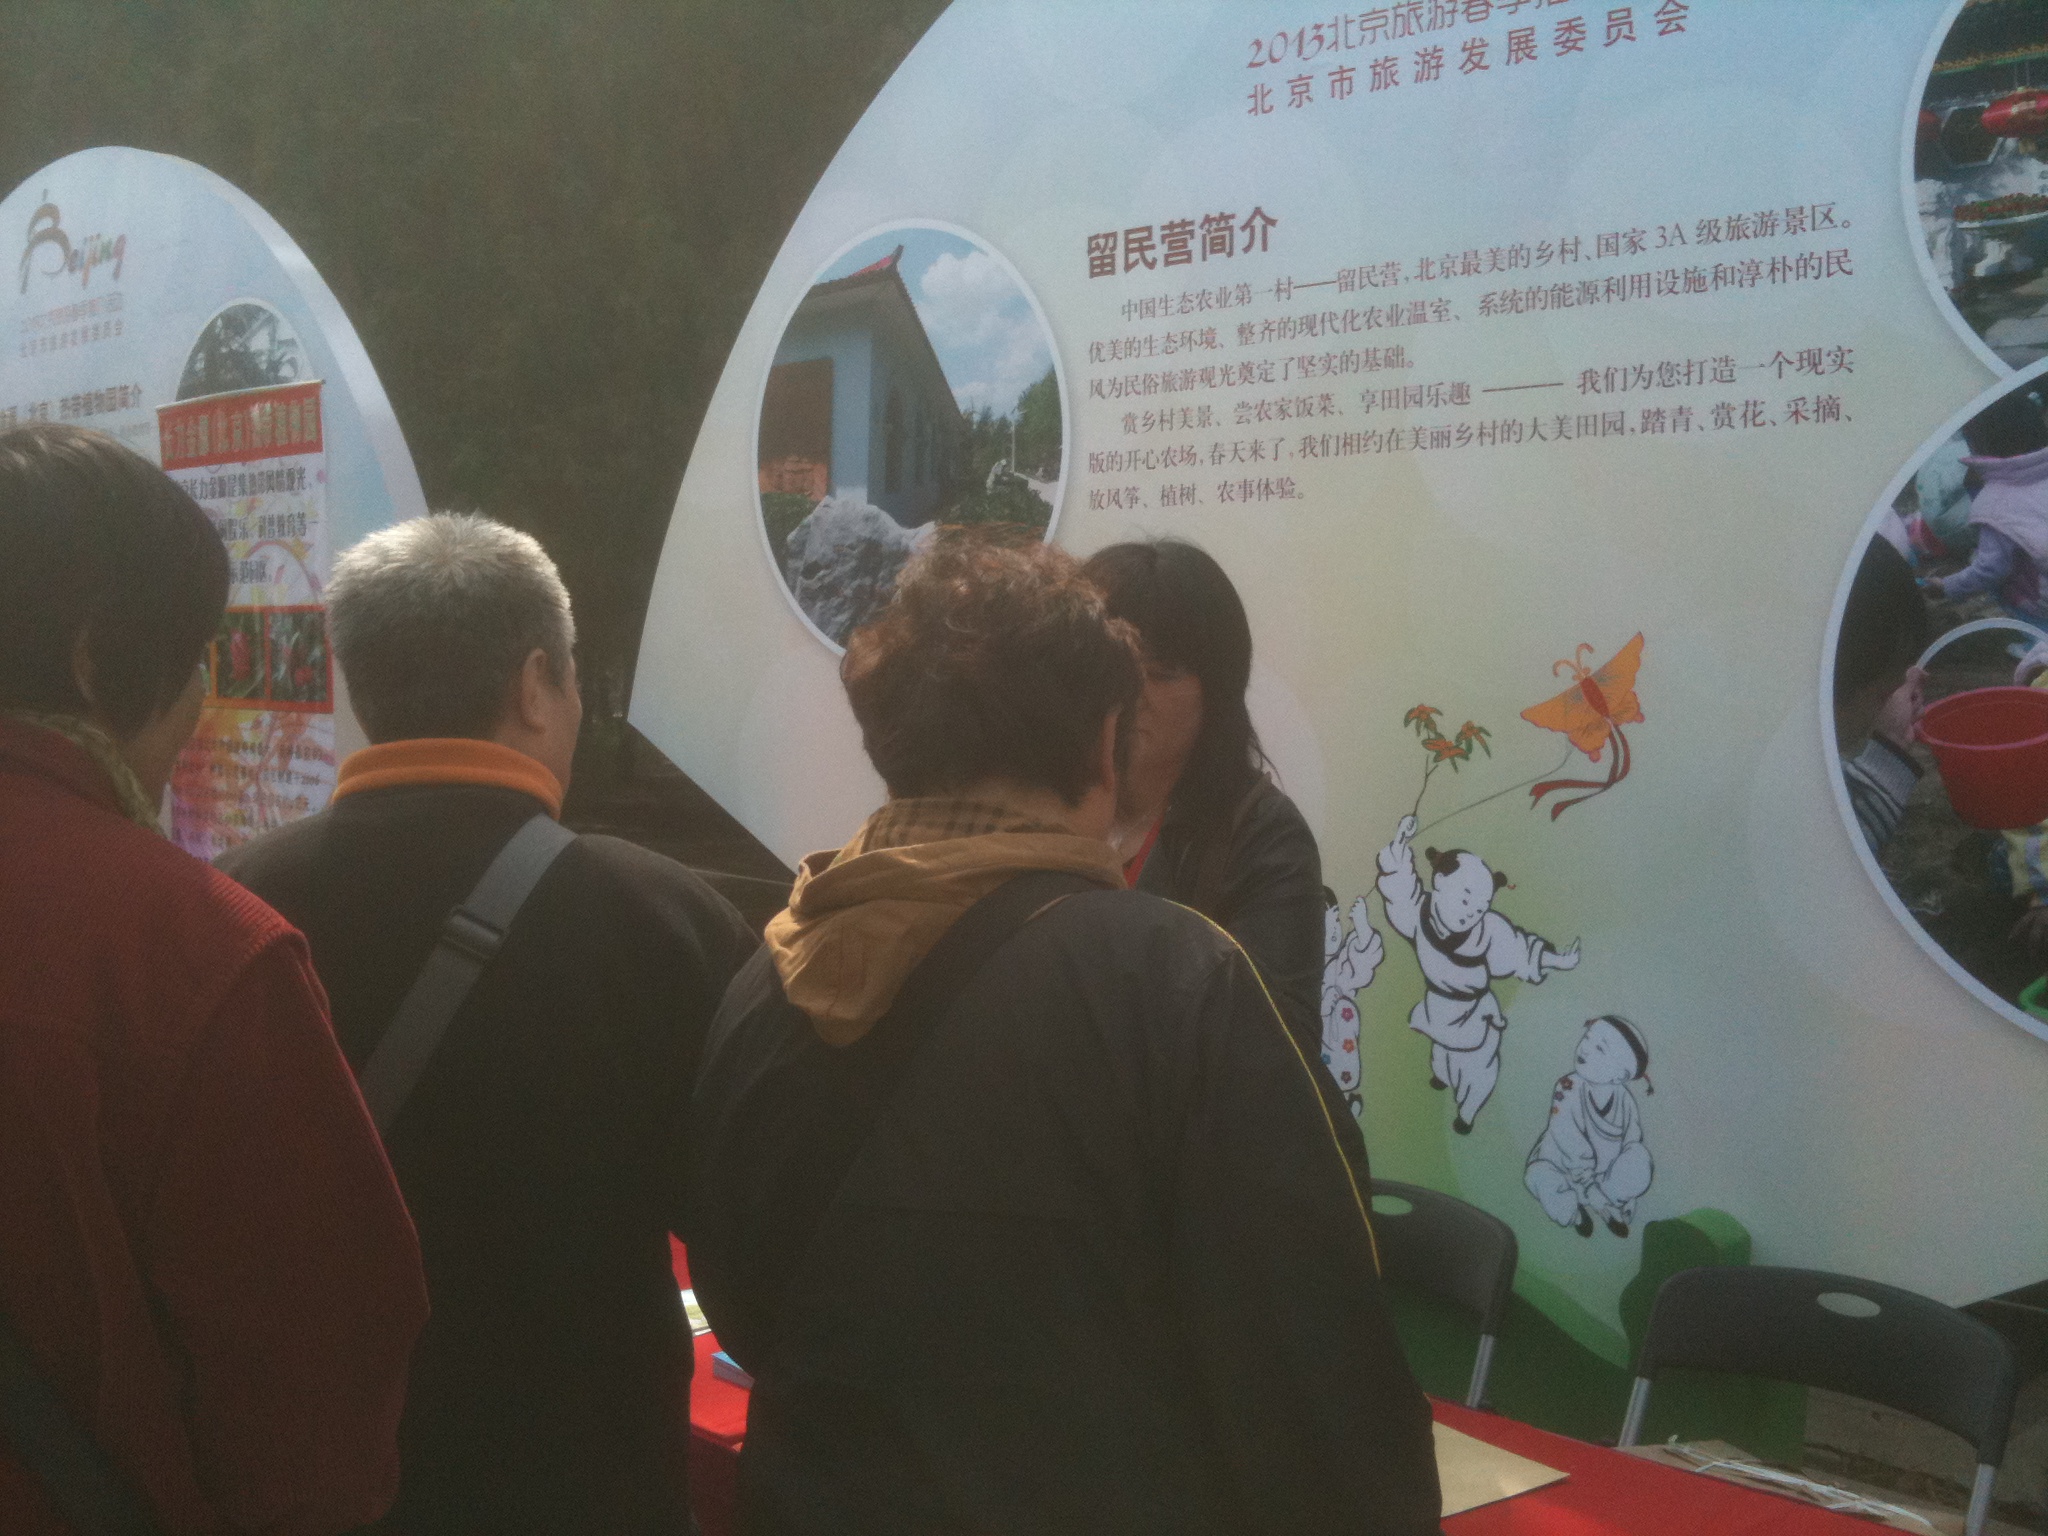 留民营生态旅游景区参加了北京市旅游发展委员会主办的“现在出发”2013北京旅游春季推介活动推介会  